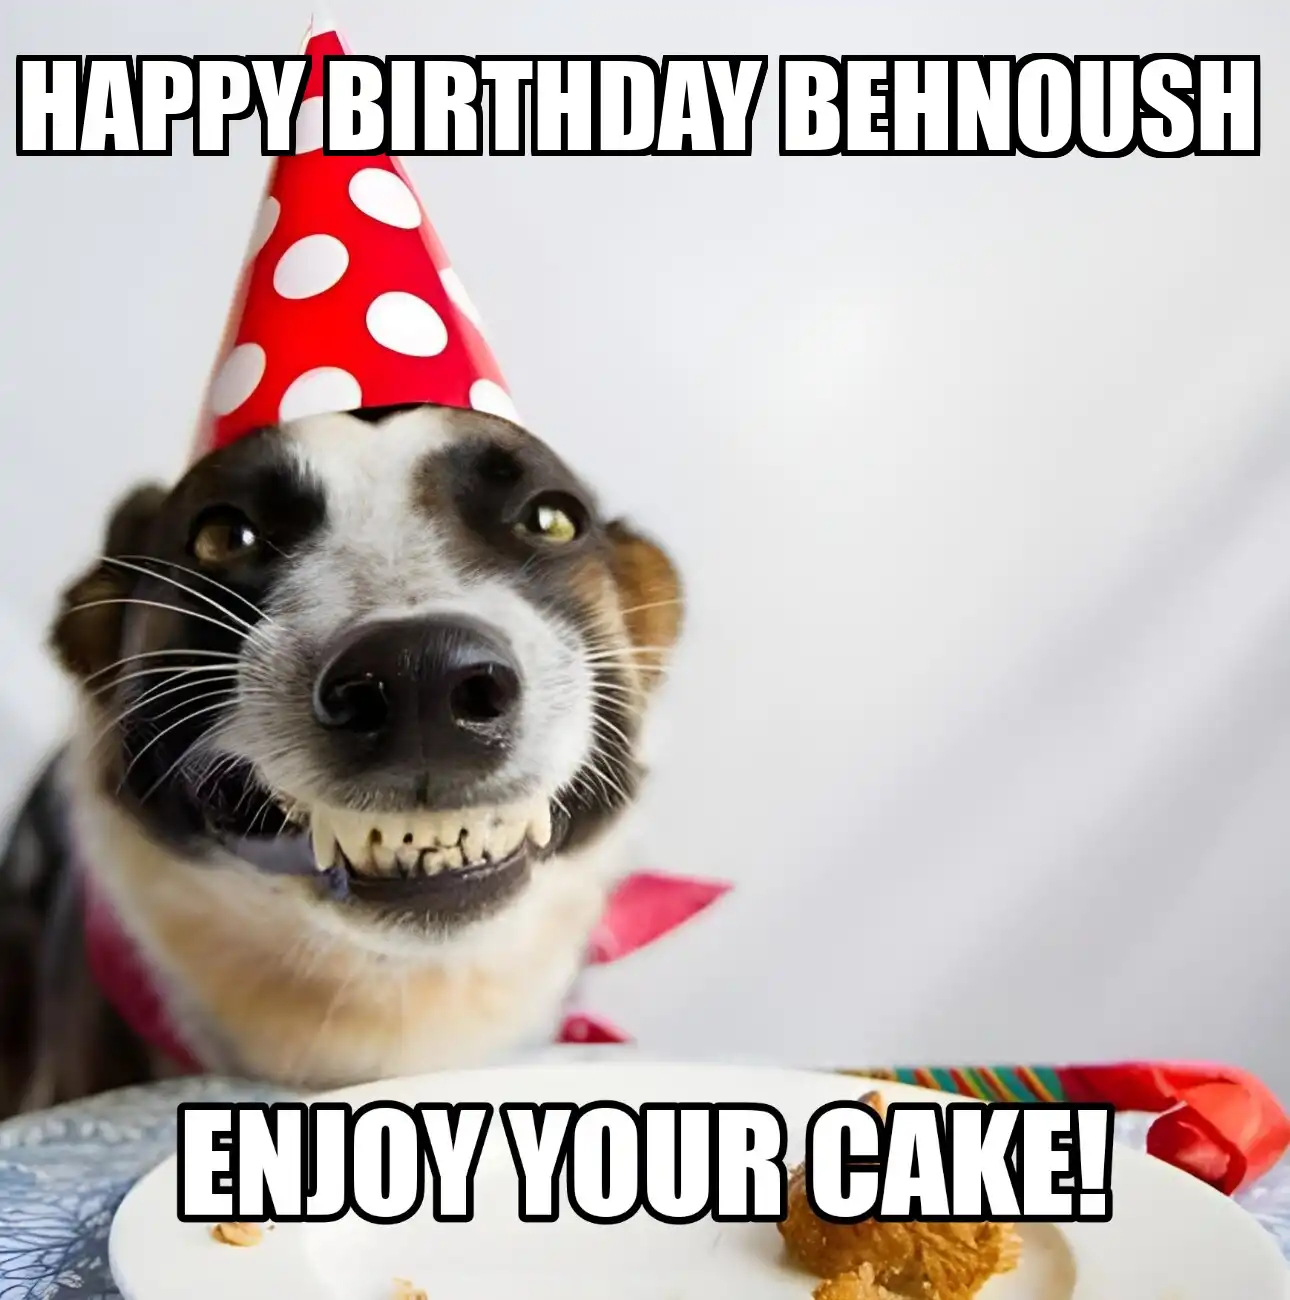 Happy Birthday Behnoush Enjoy Your Cake Dog Meme